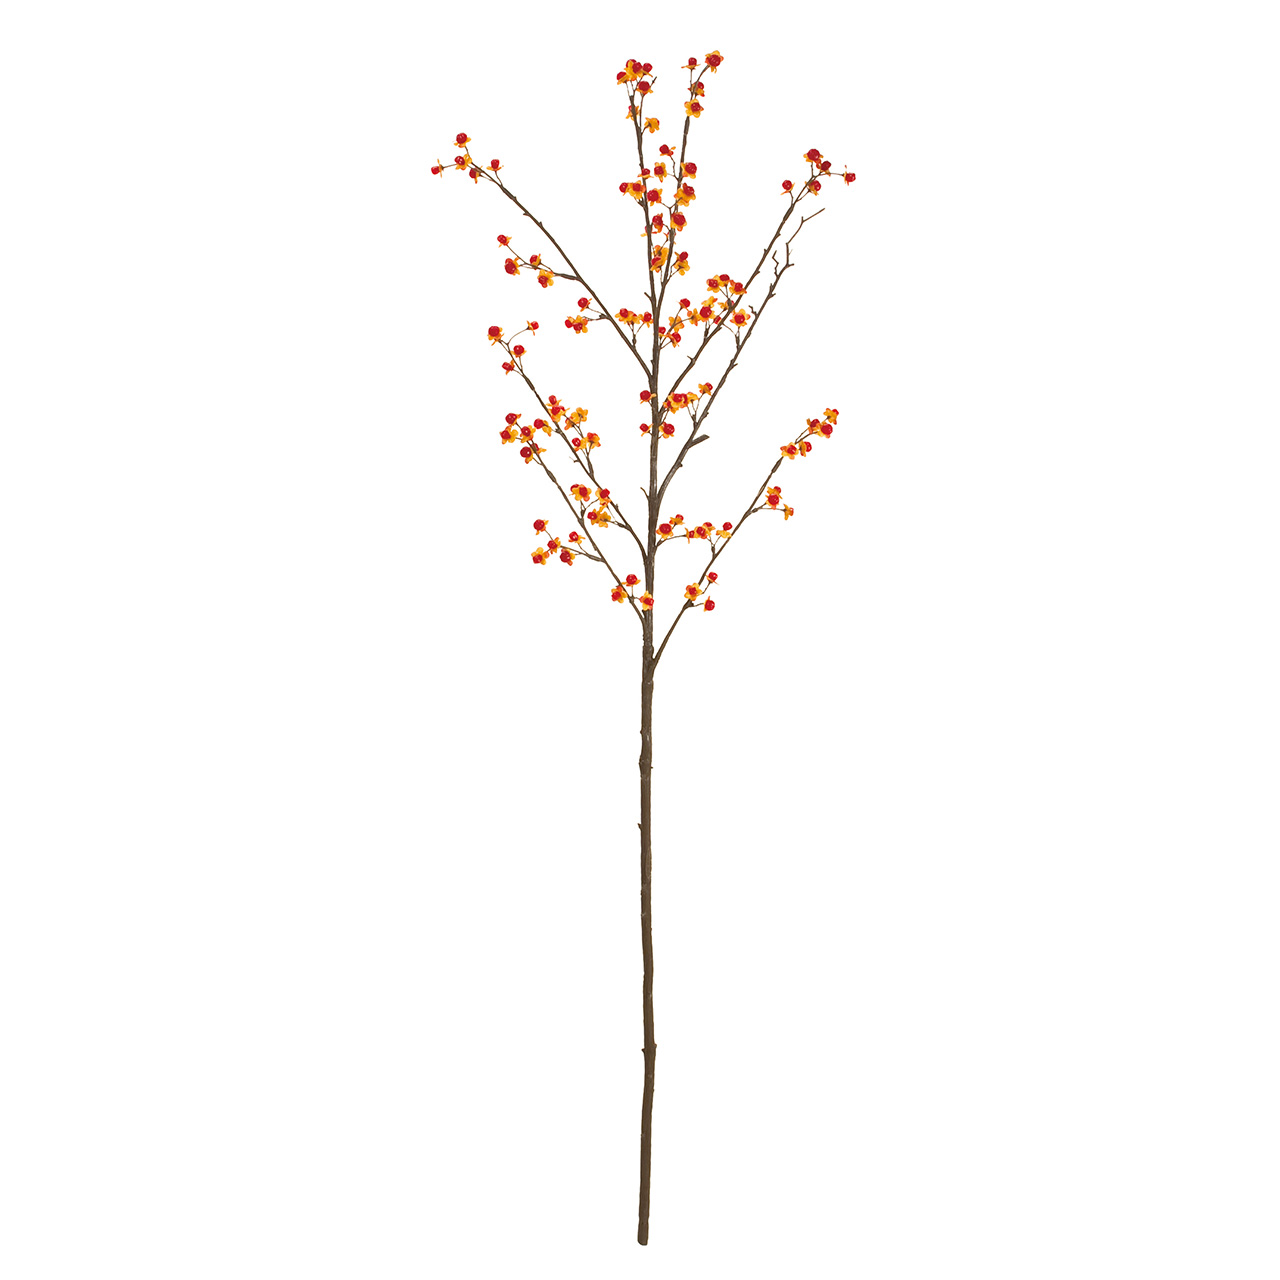 マイフラ 通販 Magiq つるうめもどき レッドオレンジ アーティフィシャルフラワー 造花 Fm 009 実付き枝もの 長さ 約98cm 9 レッドオレンジ Magiq アーティフィシャルフラワー 造花 全国にmagiq 花器 花資材などをお届けします